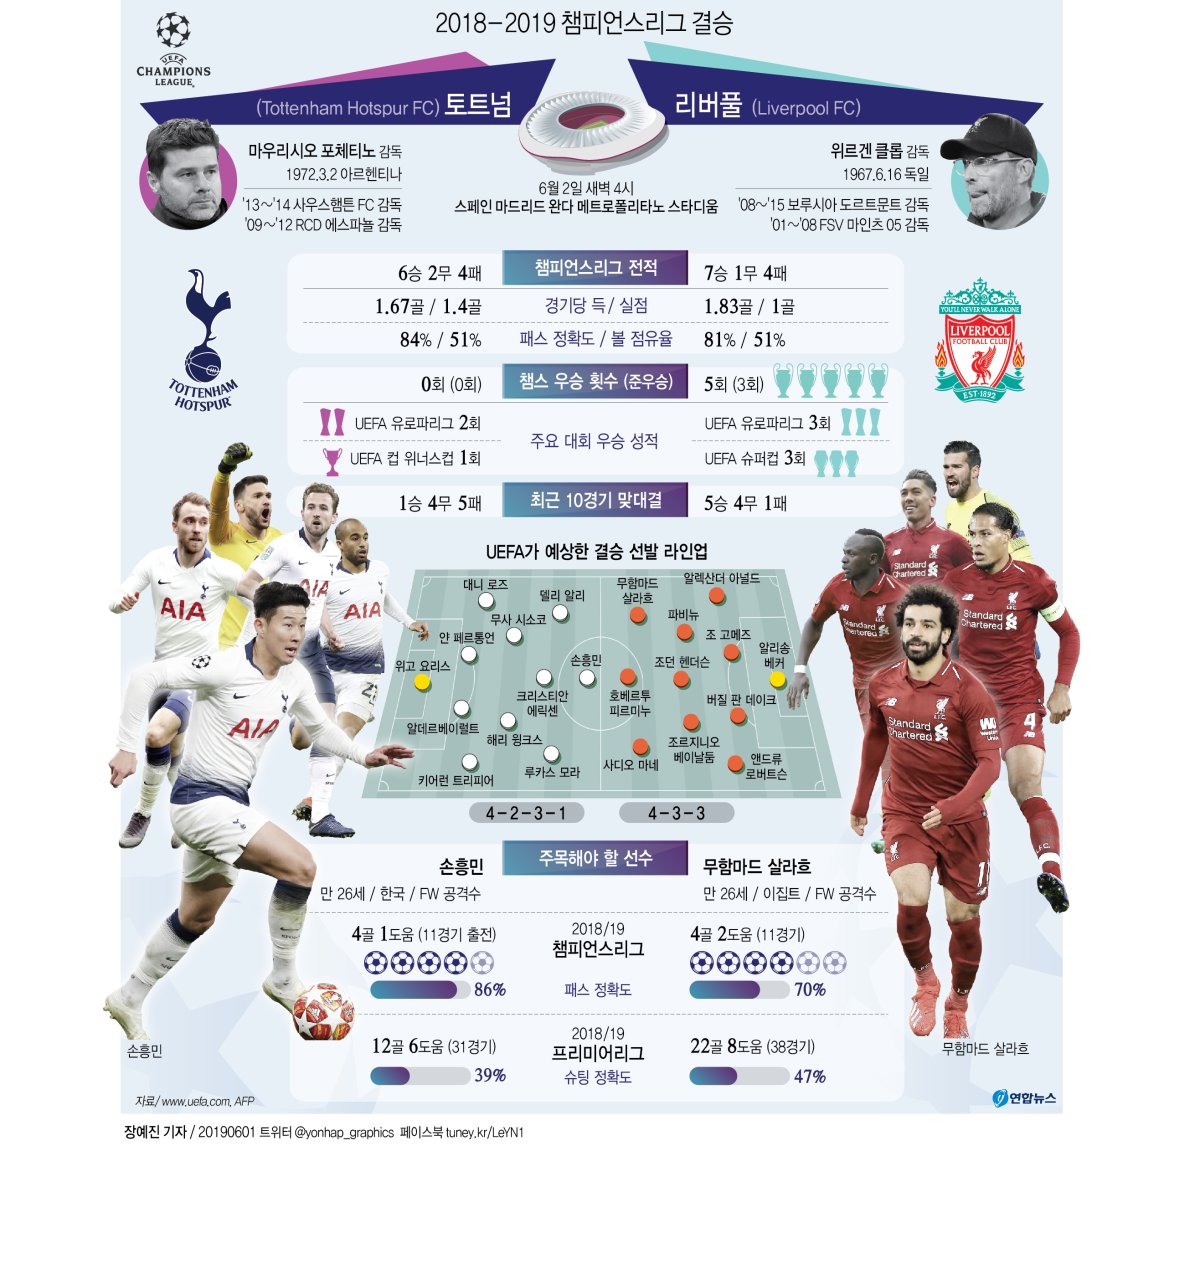 [그래픽] 2018-2019 챔피언스리그 결승, 토트넘 vs 리버풀 | 연합뉴스